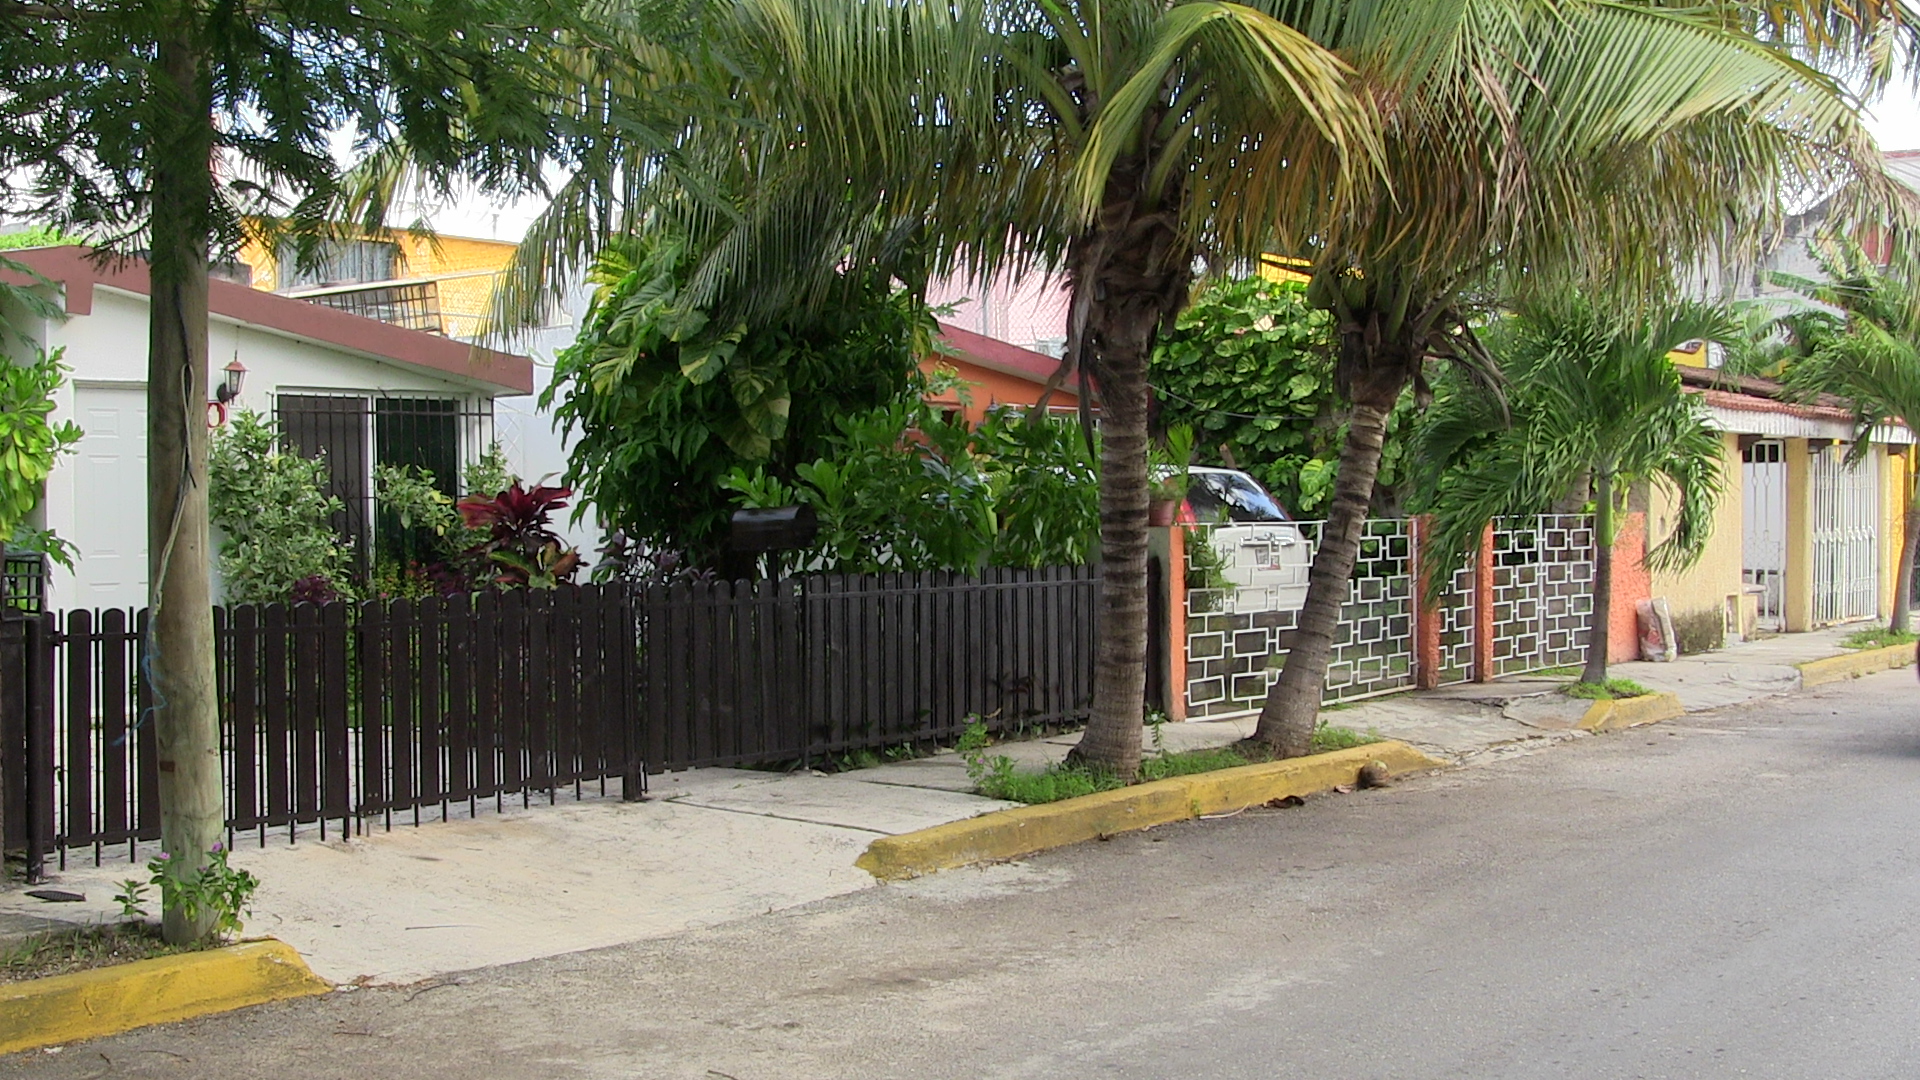 Local neighborhood in Cancun